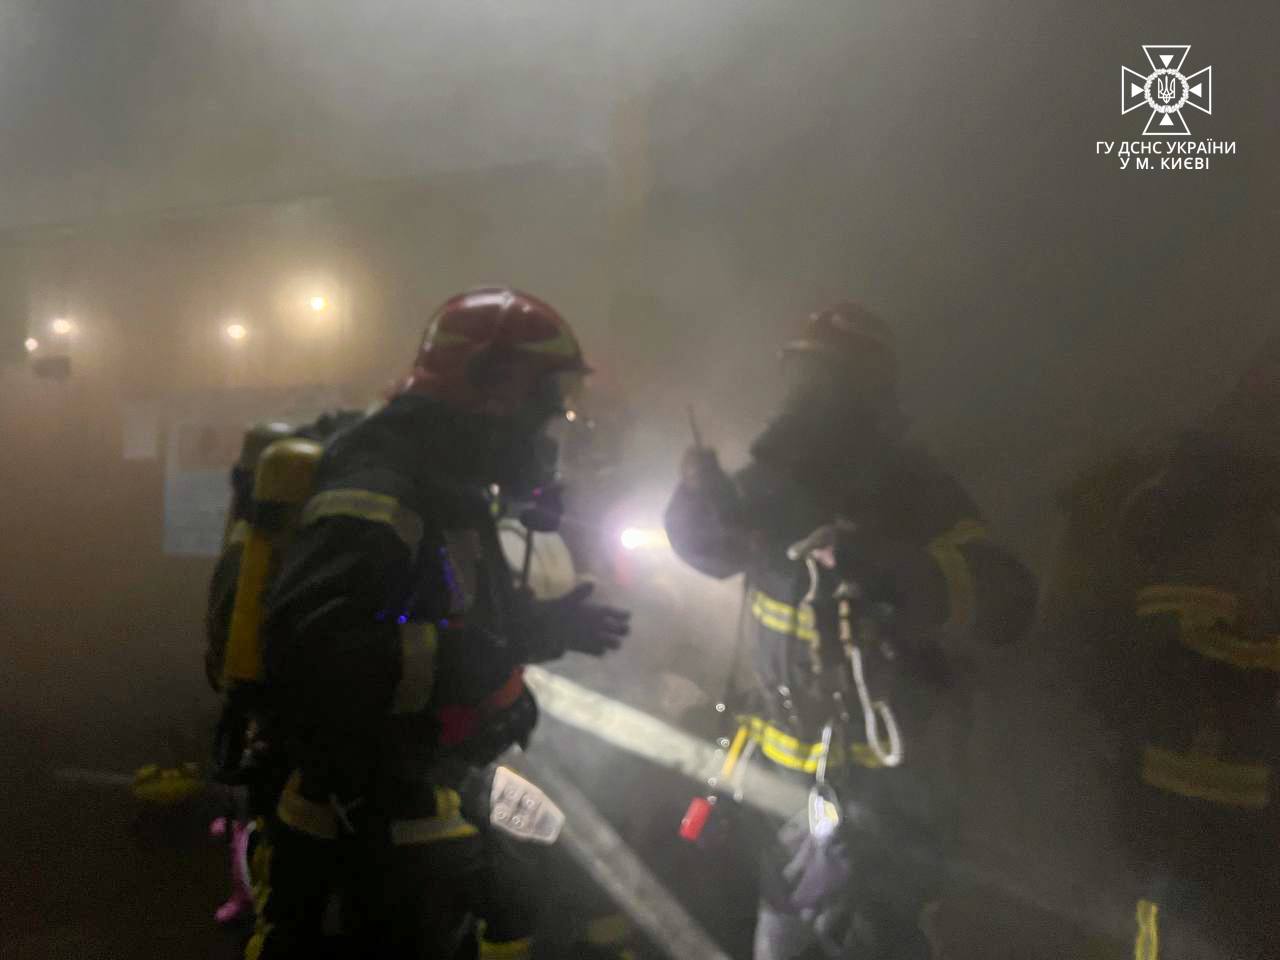 Фото спасателей в зоне задымления. Источник - ГСЧС Украины